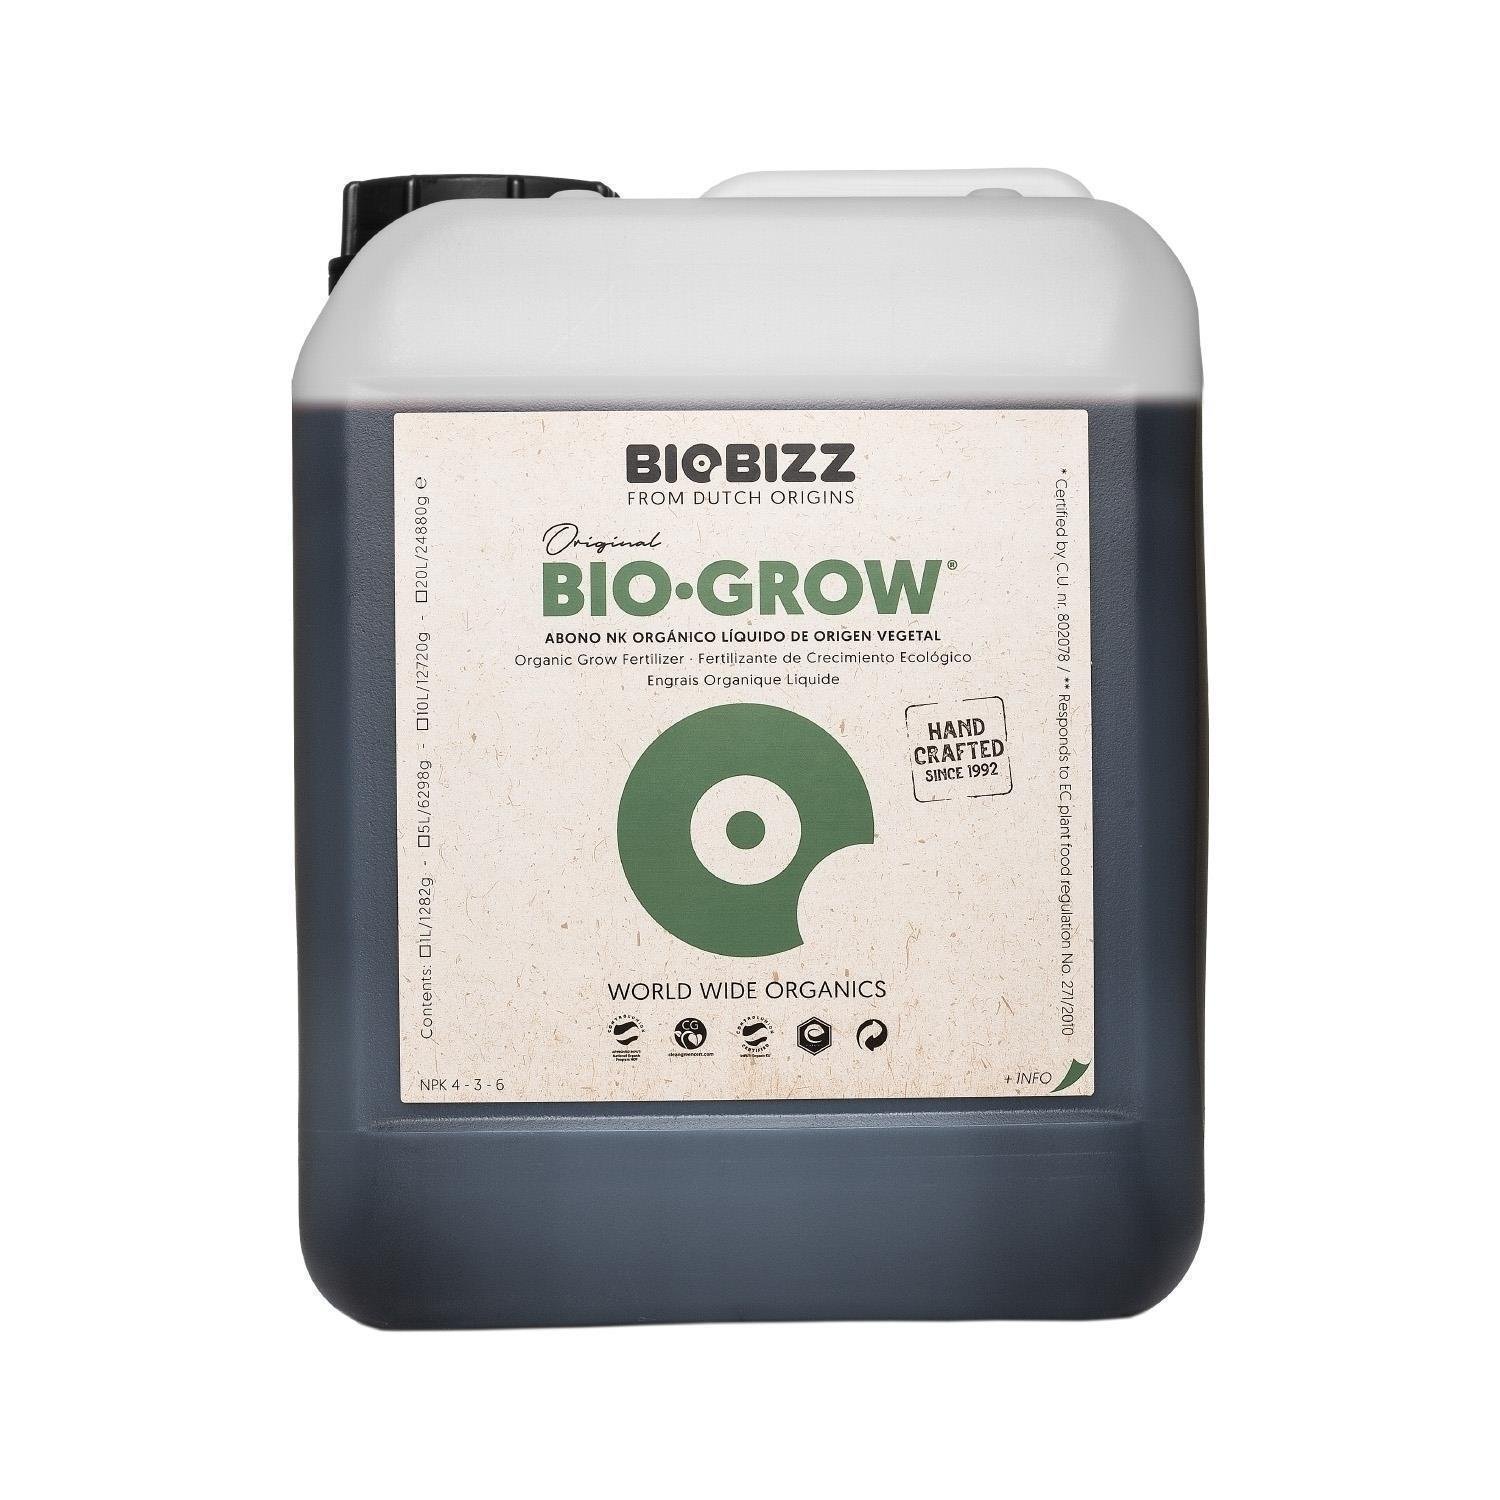 BioBizz Bio-Grow 5L